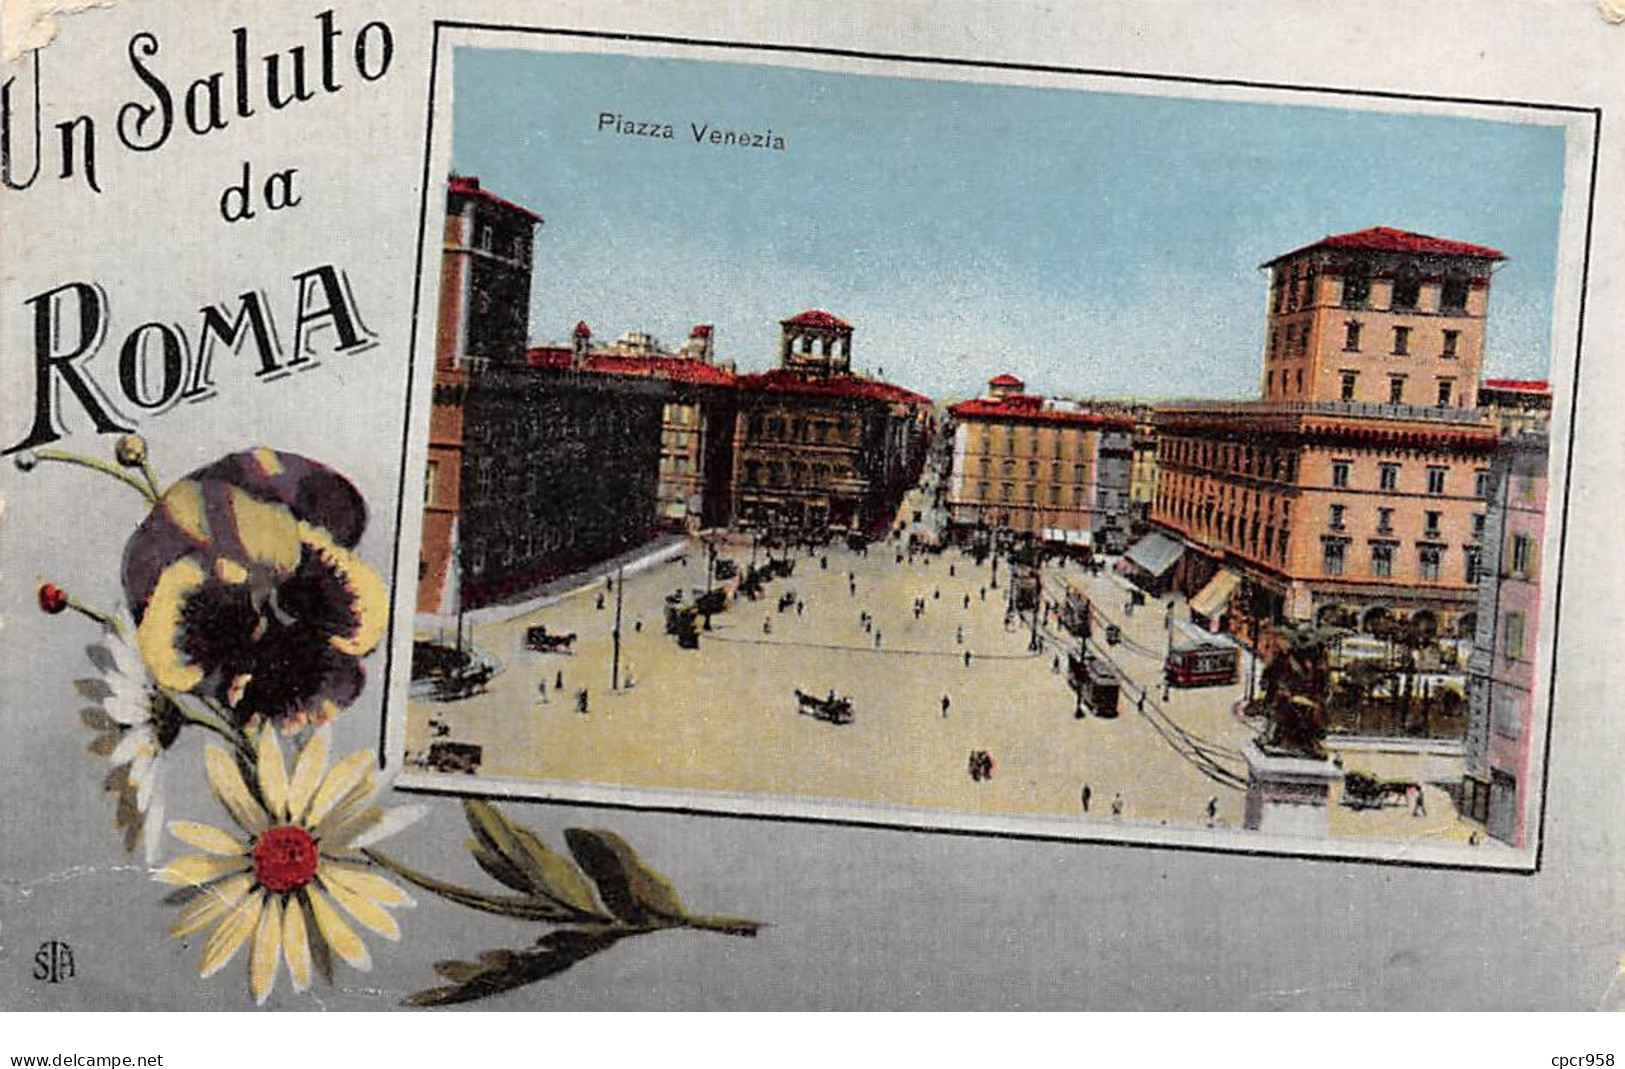 Italie - N°66622 - Un Saluto Da ROMA - Piazza Venezia - Places